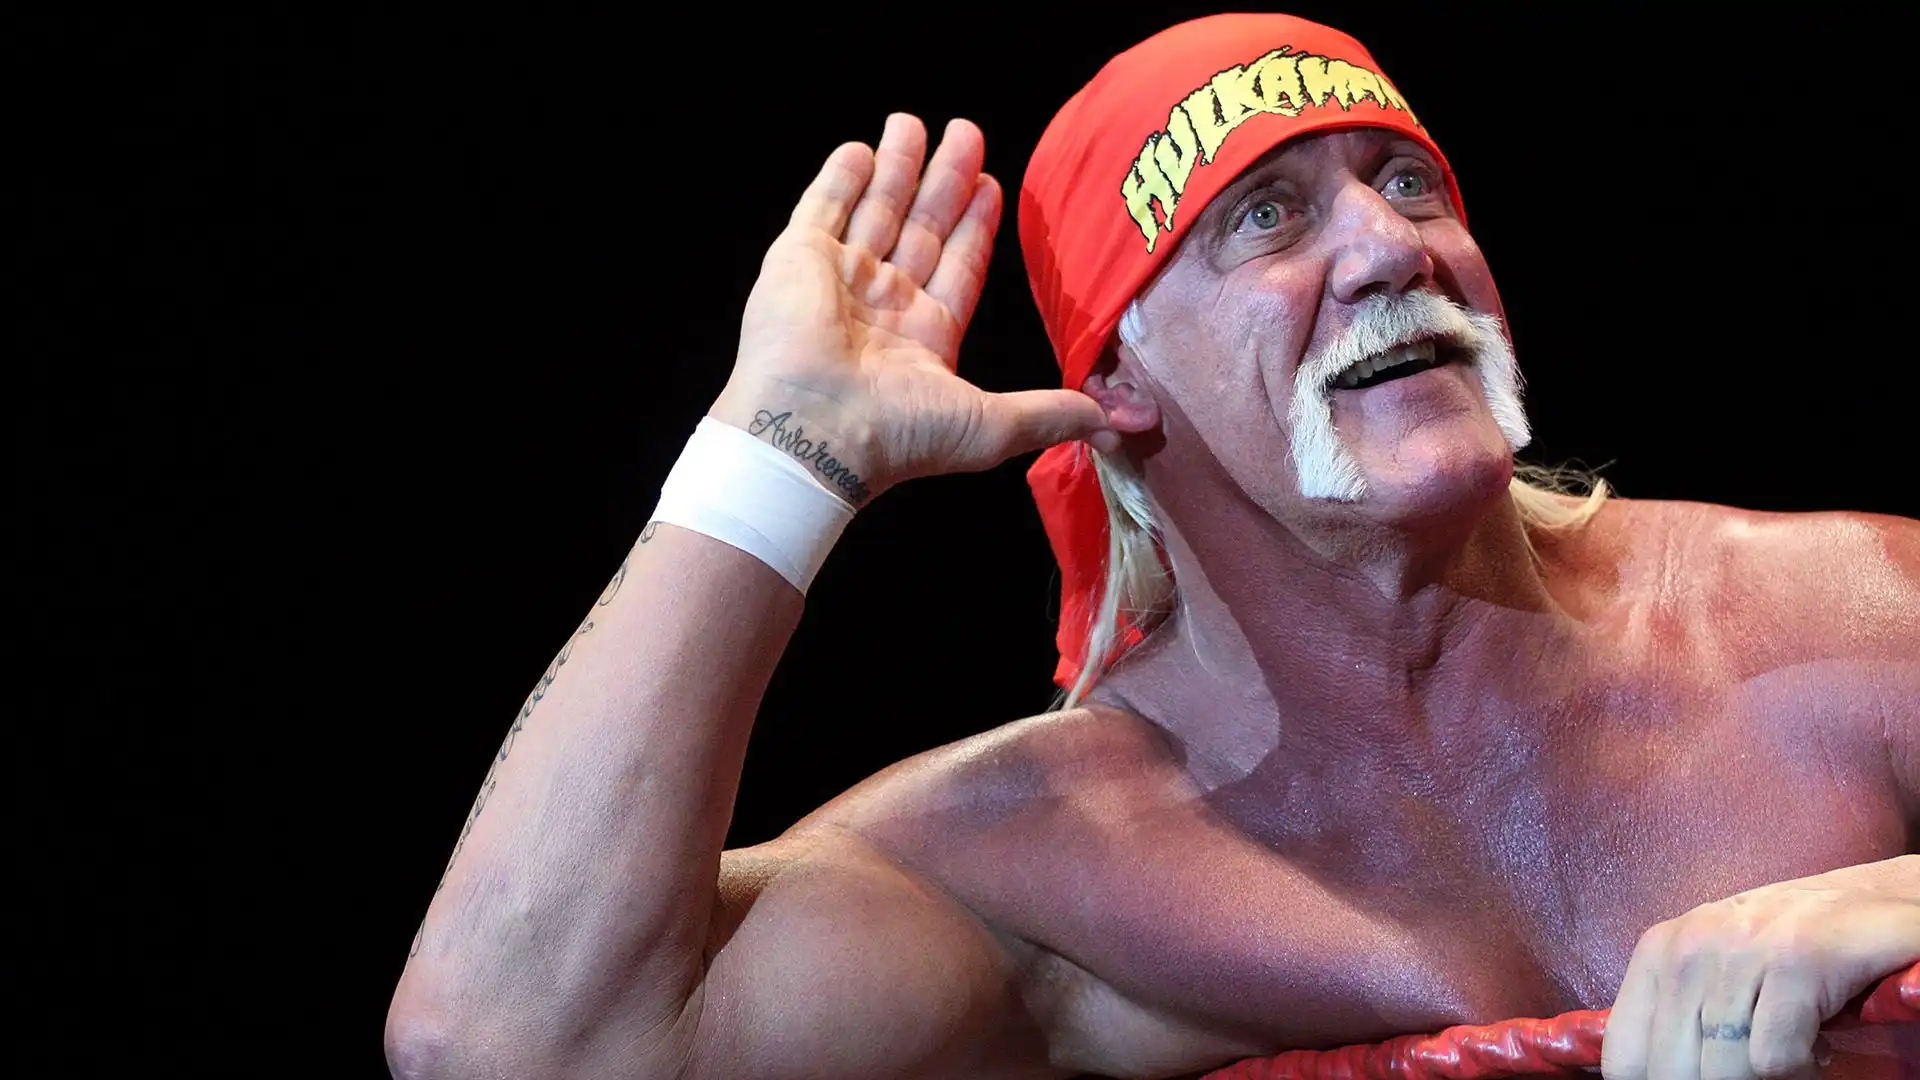 5 Hulk Hogan: patrimonio netto 25 milioni di dollari. Uno dei wrestler più conosciuti a livello mondiale, tra le icone assolute della WWF/WWE